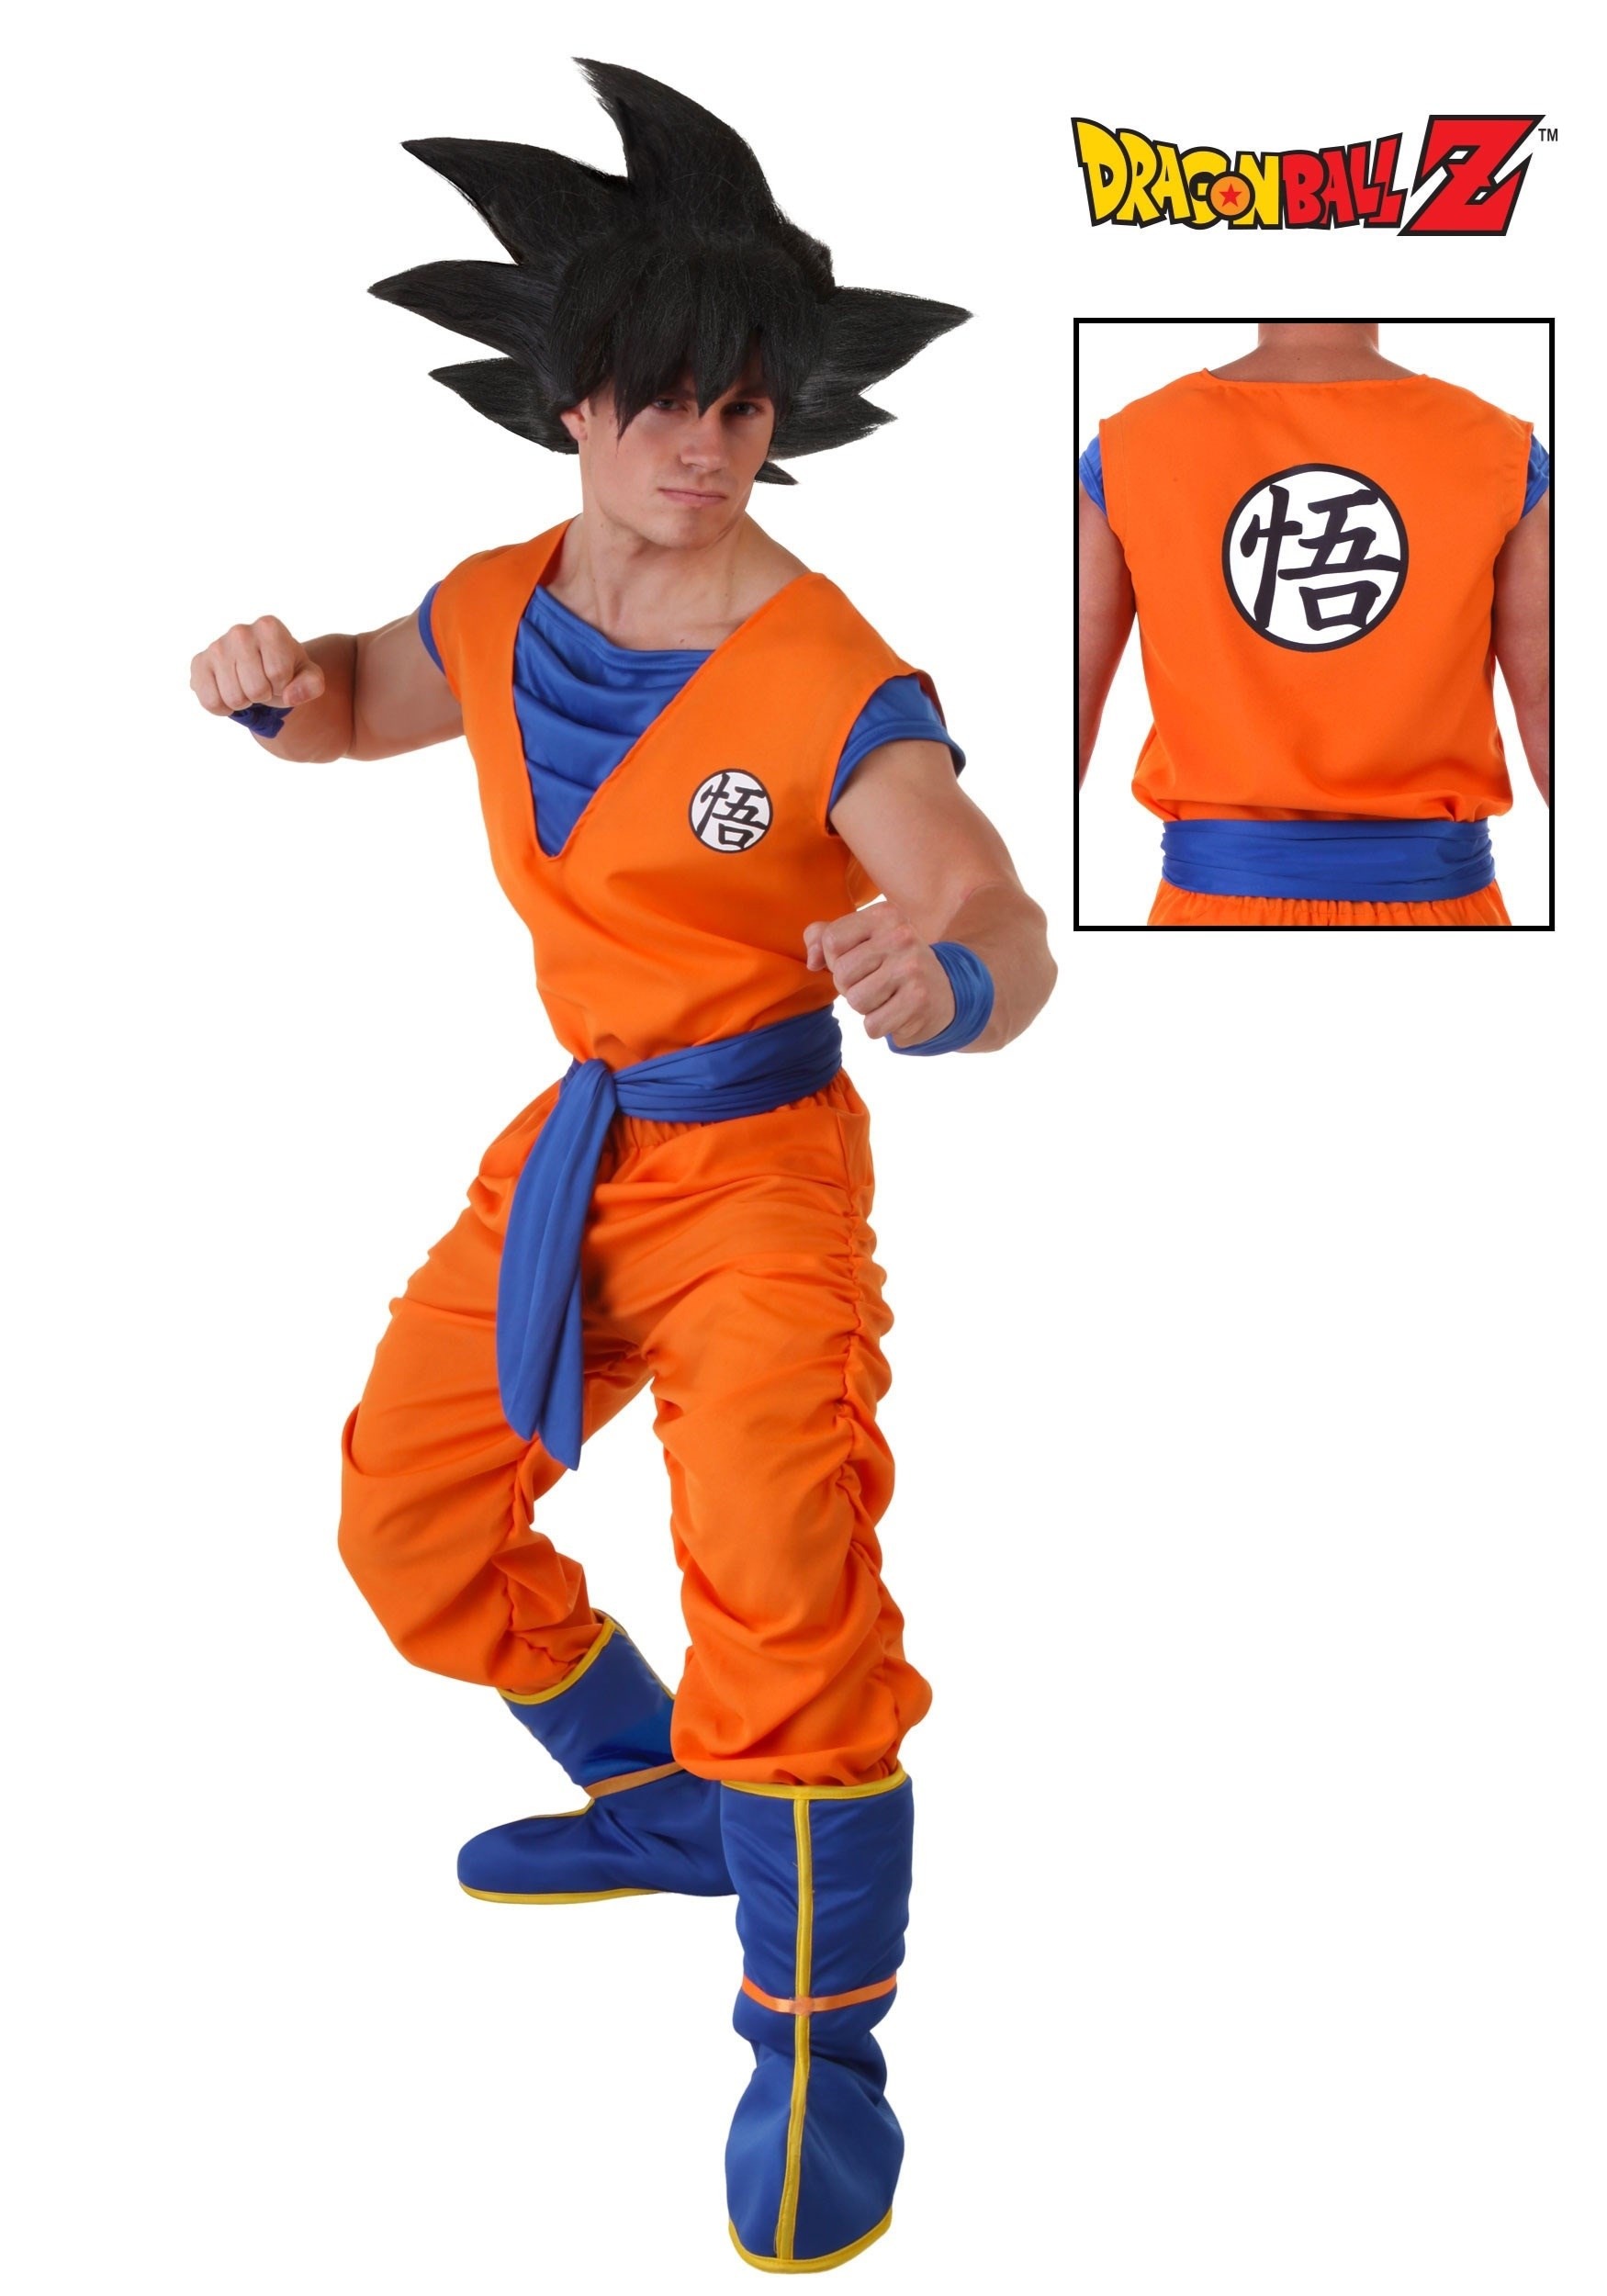 Como seria aparência do Goku em 4 estilos de anime diferentes? Veja